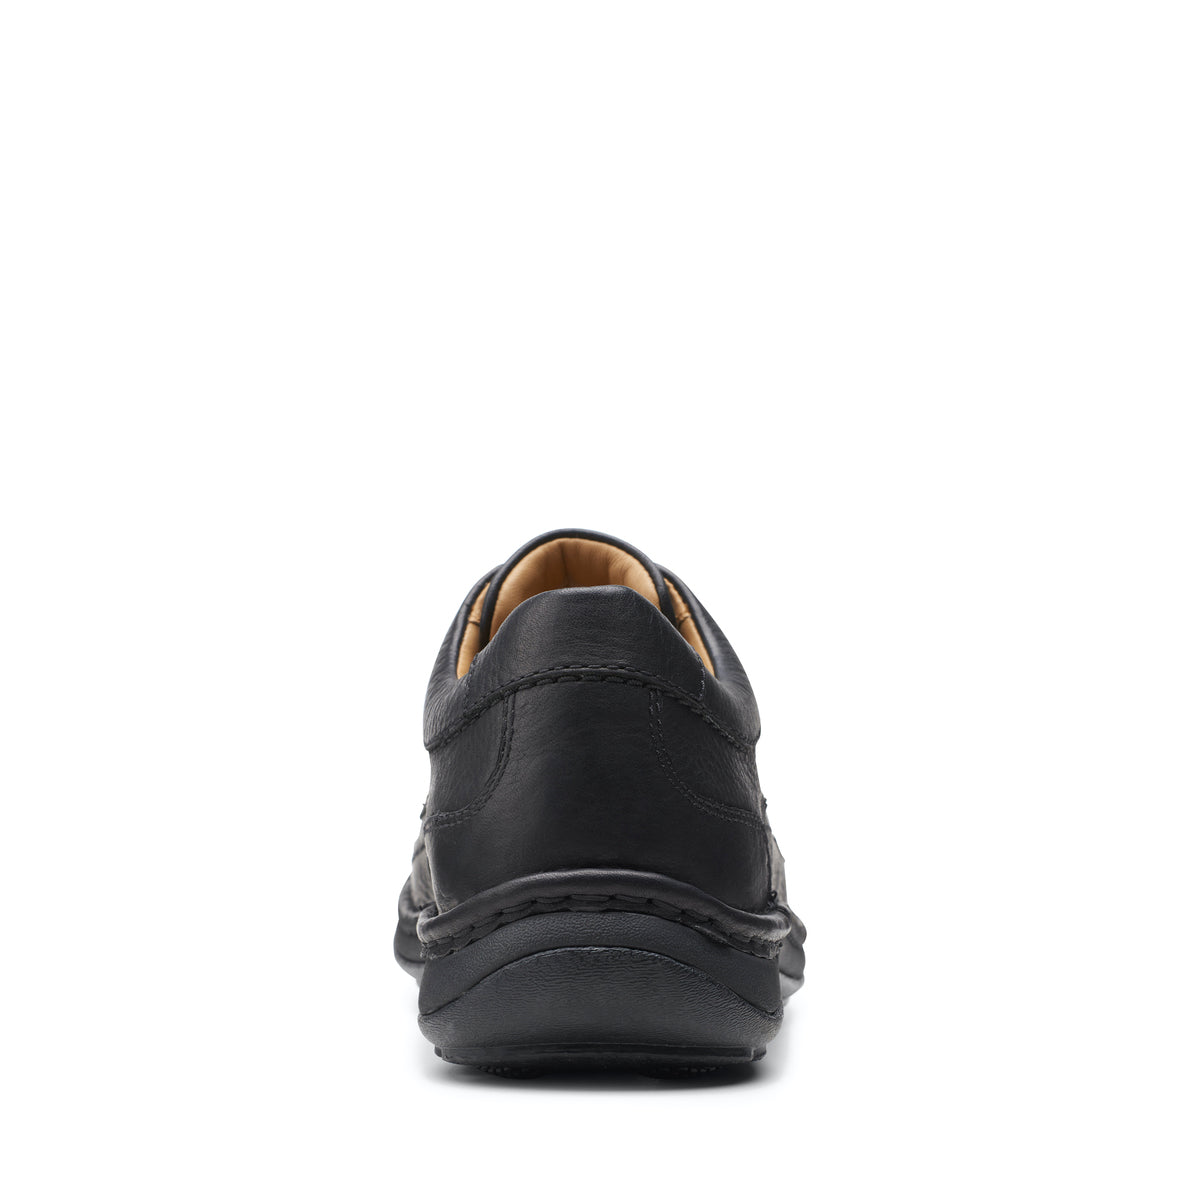 Zapatos Derby De La Marca Clarks Para Hombre Modelo Nature Three Black Leather En Color Negro